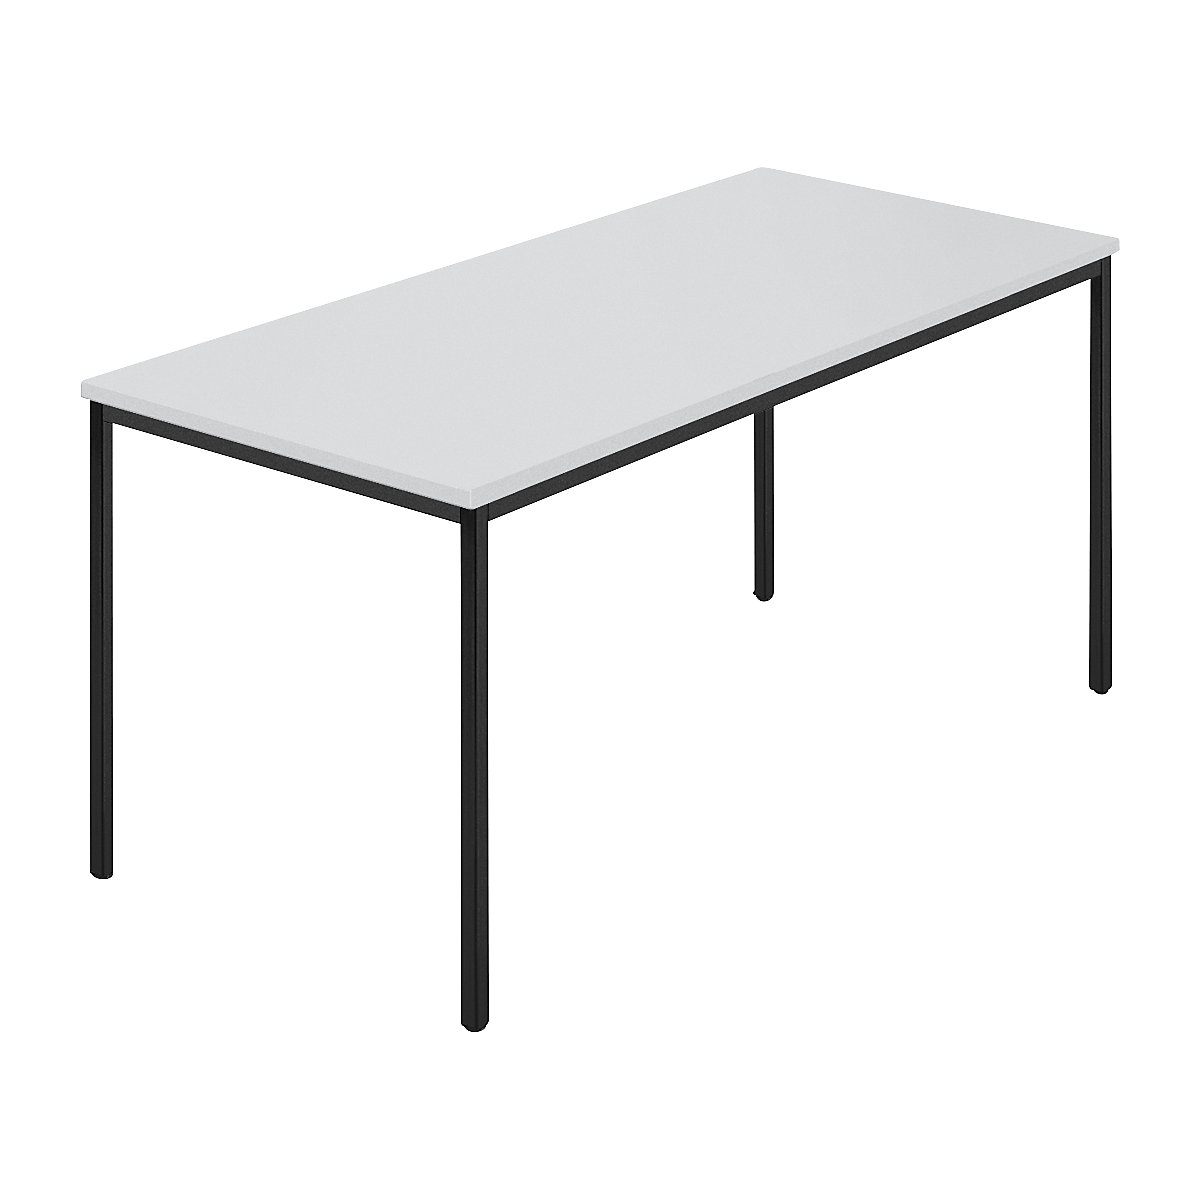 Rechthoekige tafel, vierkante buis met coating, b x d = 1500 x 800 mm, grijs / antracietkleurig-7